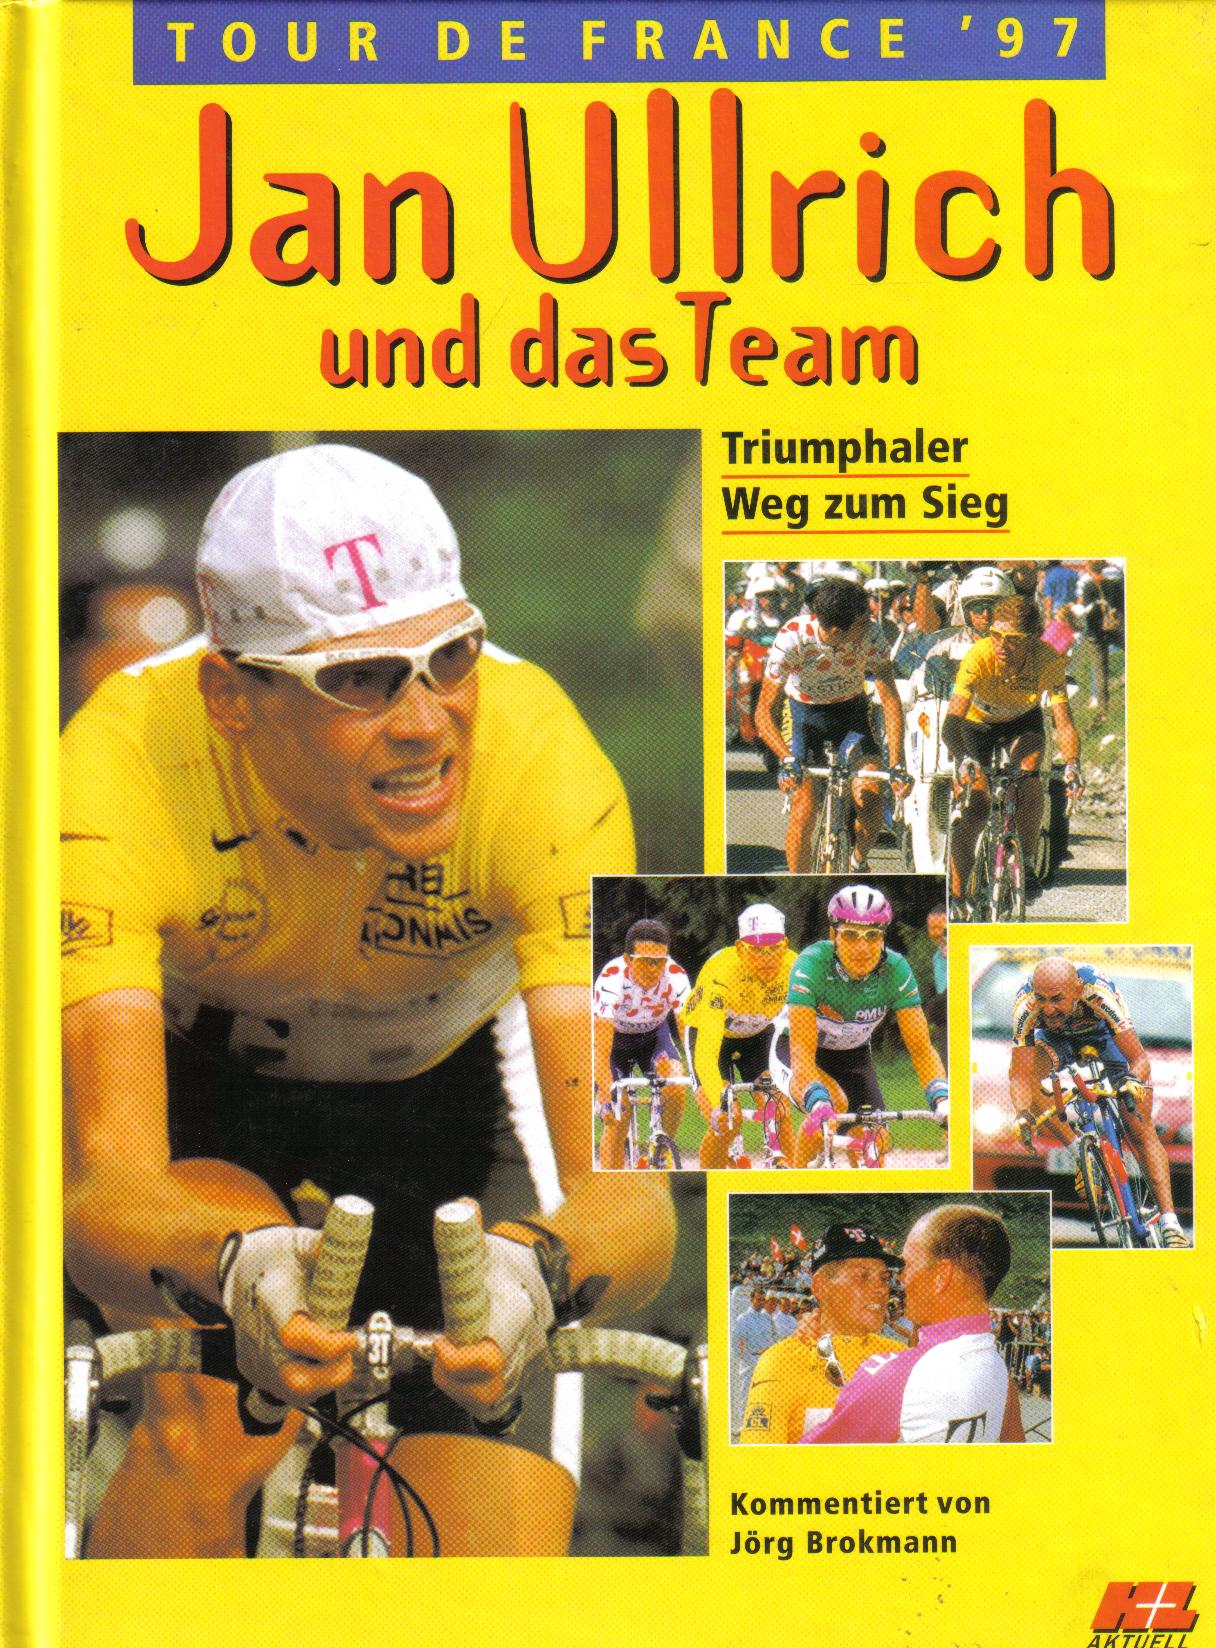 Jan Ullrich und das Team  Tour de France 1997  kommentiert von Joerg Brokmann